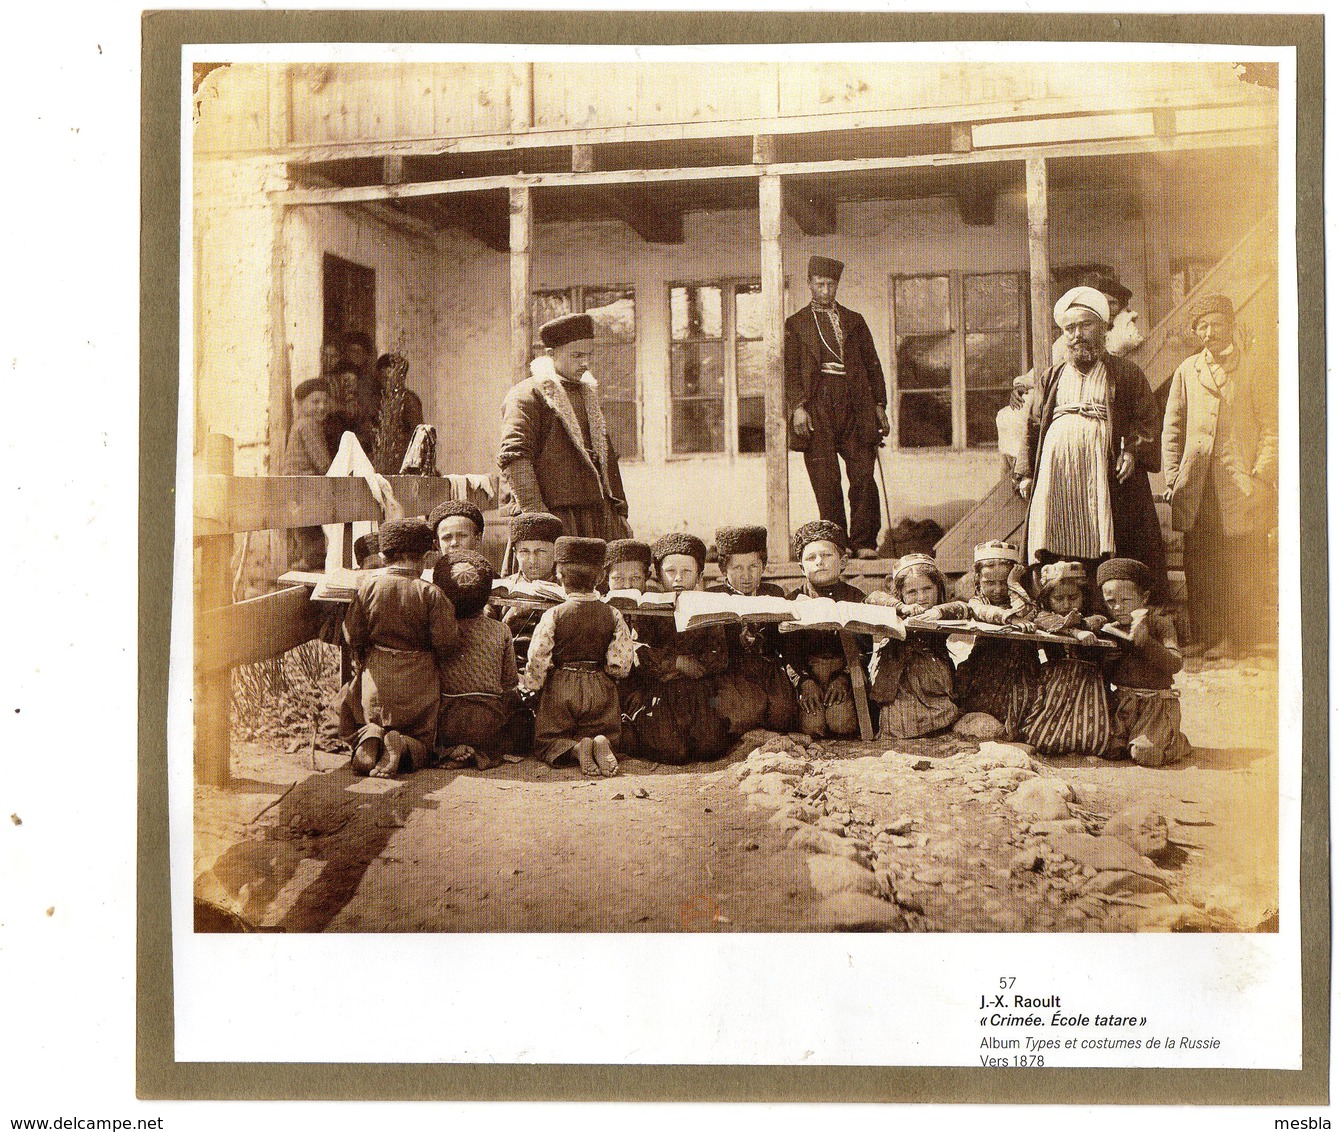 Reproduction D'une Photo De J.X. RAOULT  -  CRIMEE,  Ecole Tatare  (vers 1878) - Ethnics